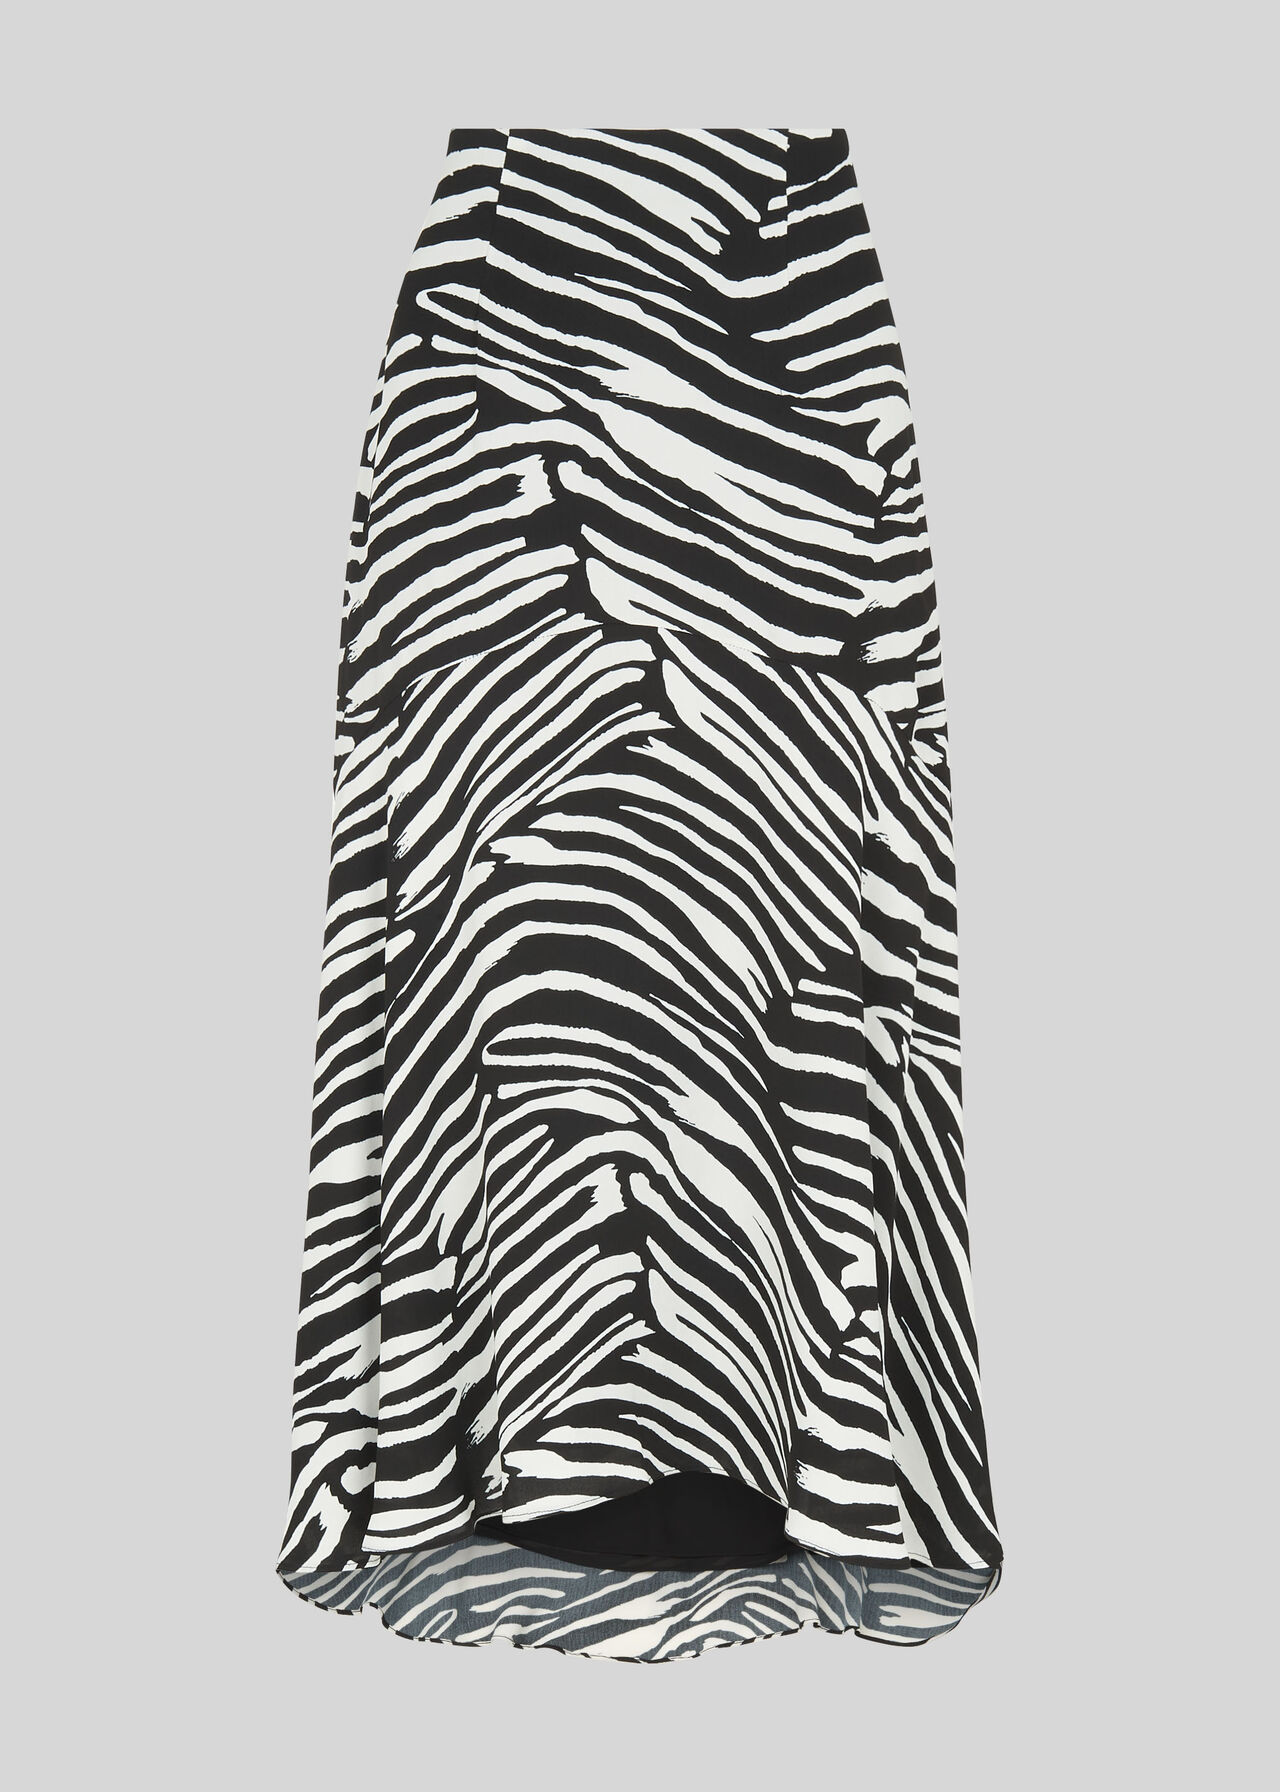 Zebra Print Skirt Black and White